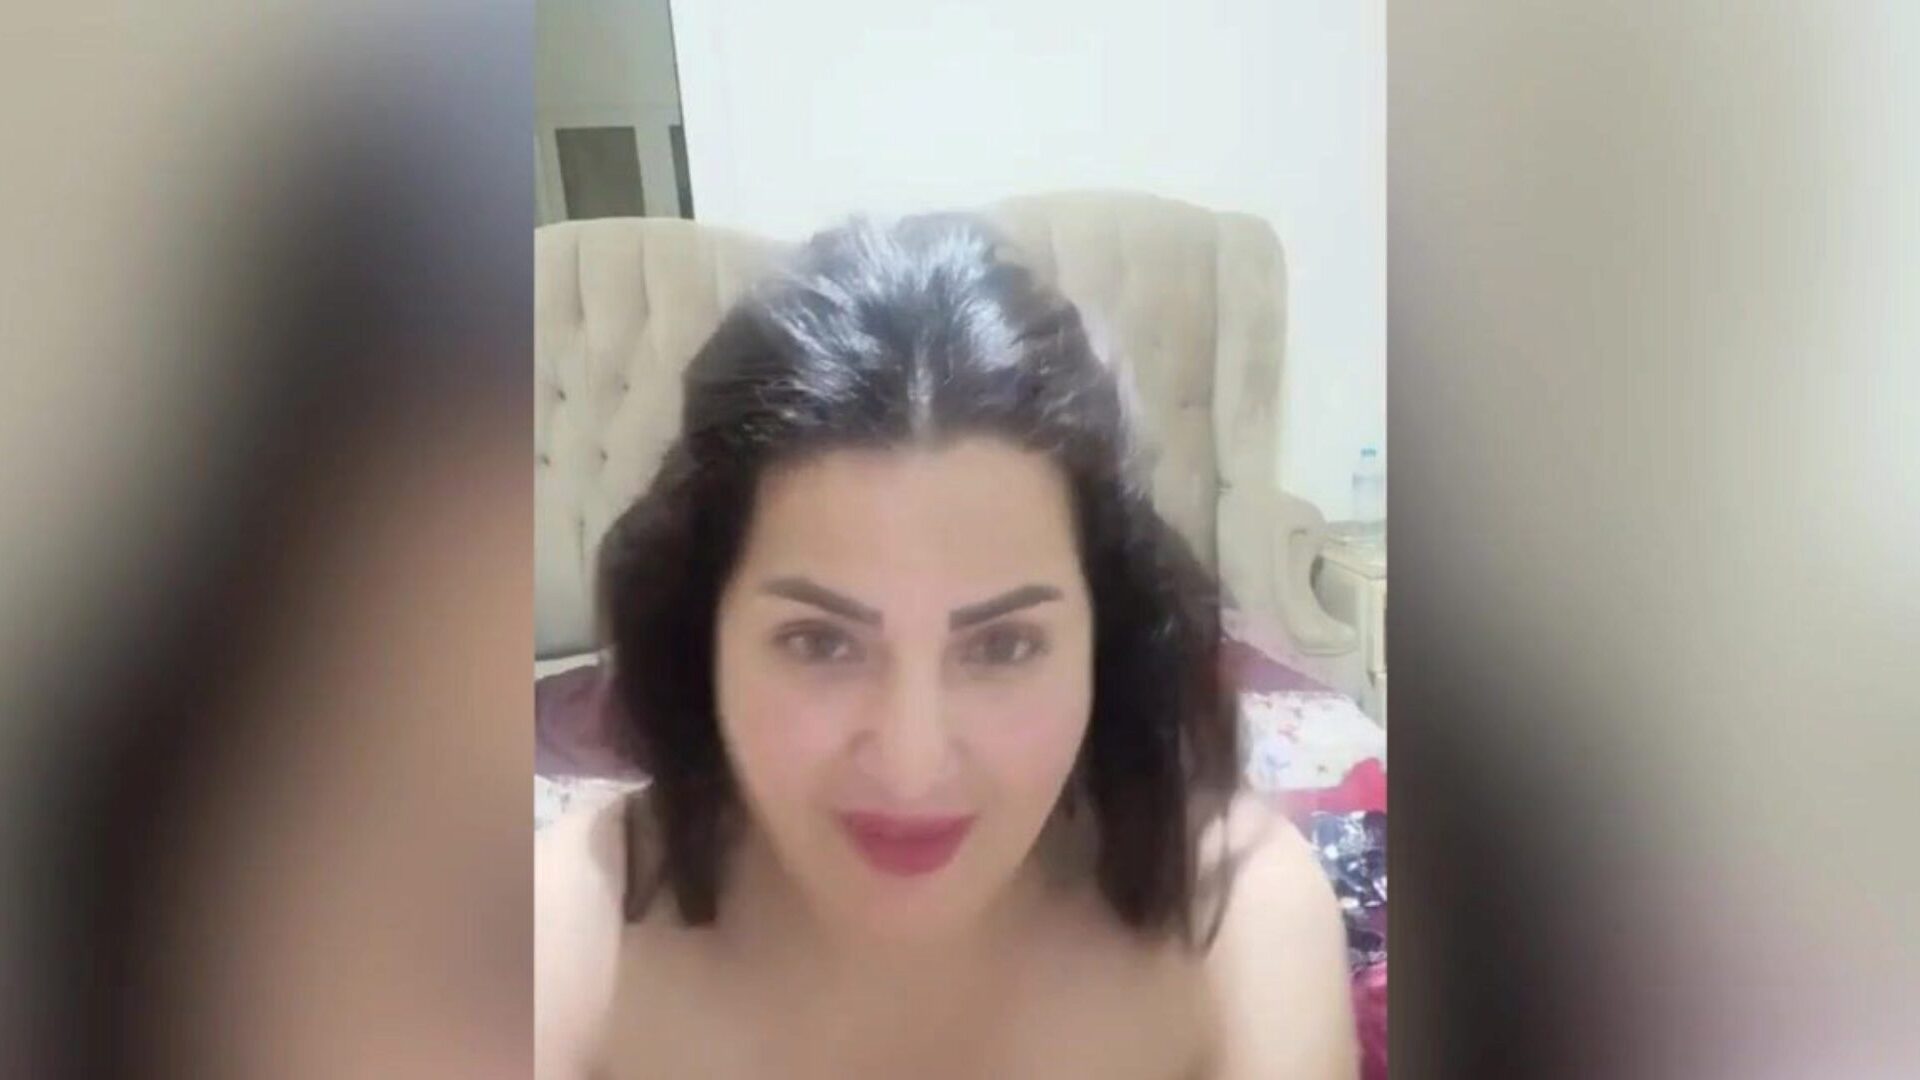 arapska egipatska glumica fuck-a-thon sama el masry vruća masrya naar egipatska arapska orgija sama al-masry, koja je hawt asaaa, pokazuje svoje velike bazuke i hawt velike gazoo masrya naar